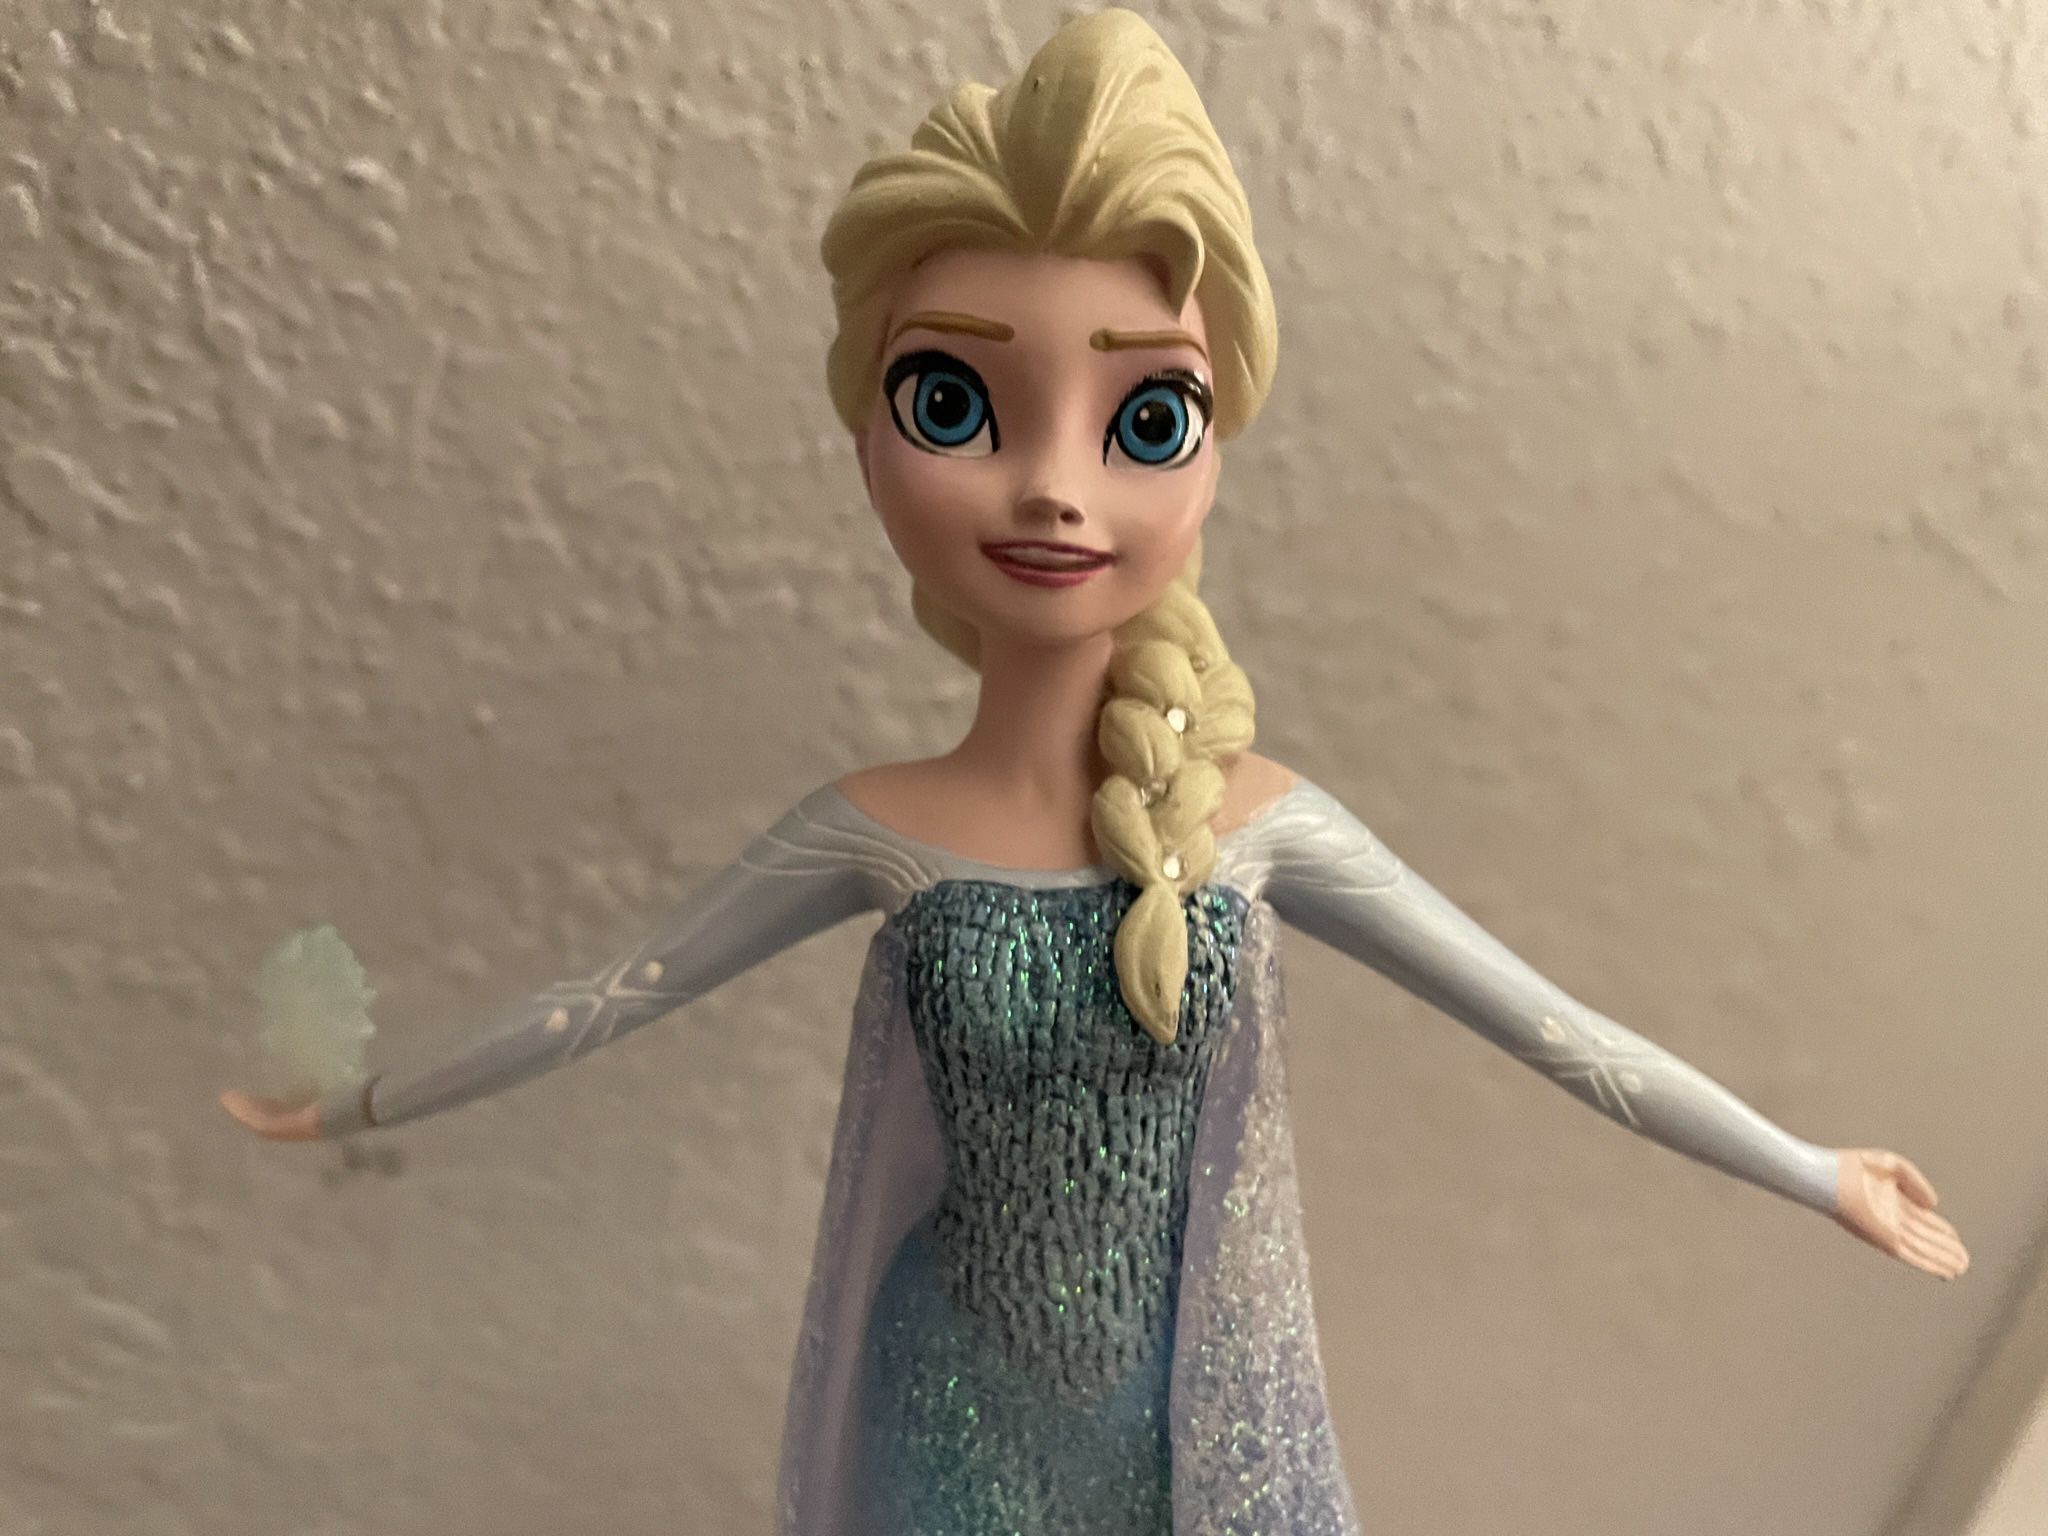 ey's Frozen "Let It Go" Collection Elsa Figurine 